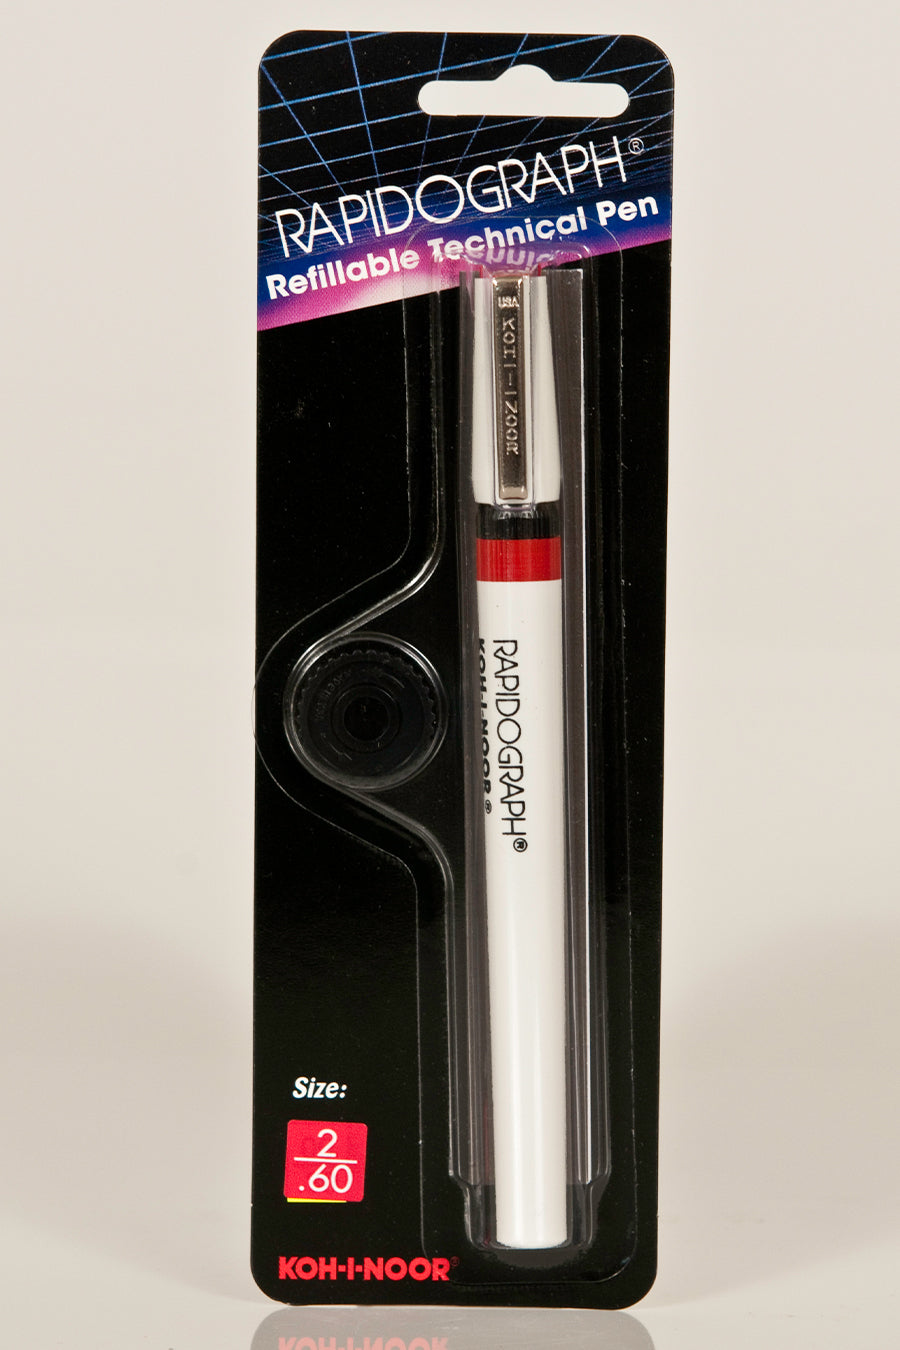 Koh-I-Noor Rapidograph Technical Pen, 0.6 mm